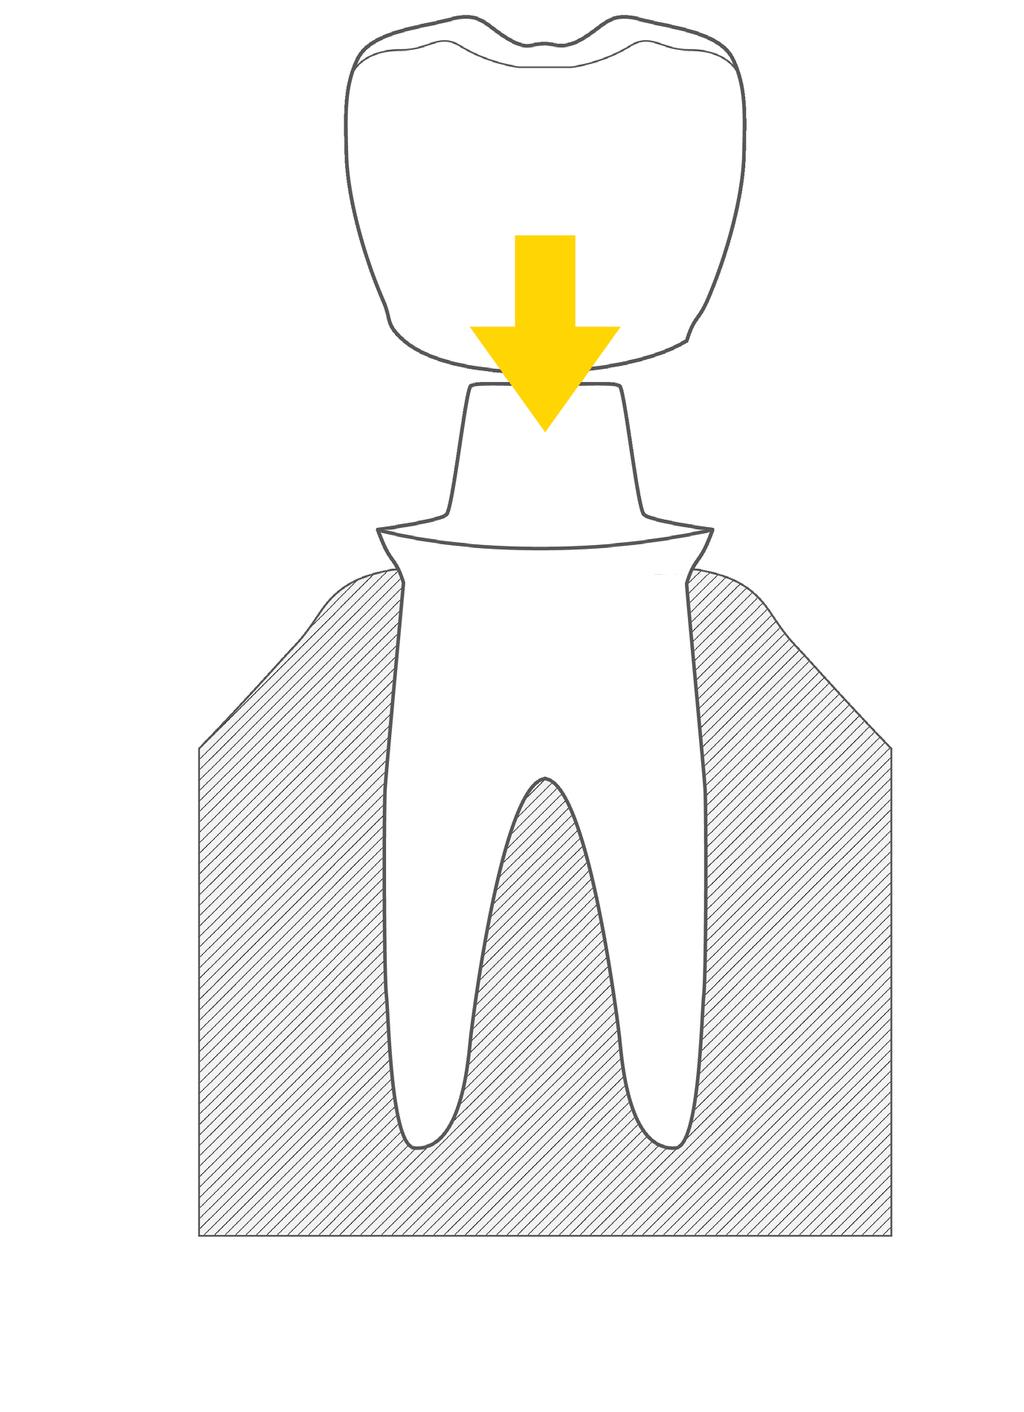 Protezy stałe: Korony protetyczne Naturalny ząb zbudowany jest z korzenia oraz z korony. Korona to widoczna w ustach cześć zęba i to właśnie od niej zależy estetyka naszego uśmiechu.